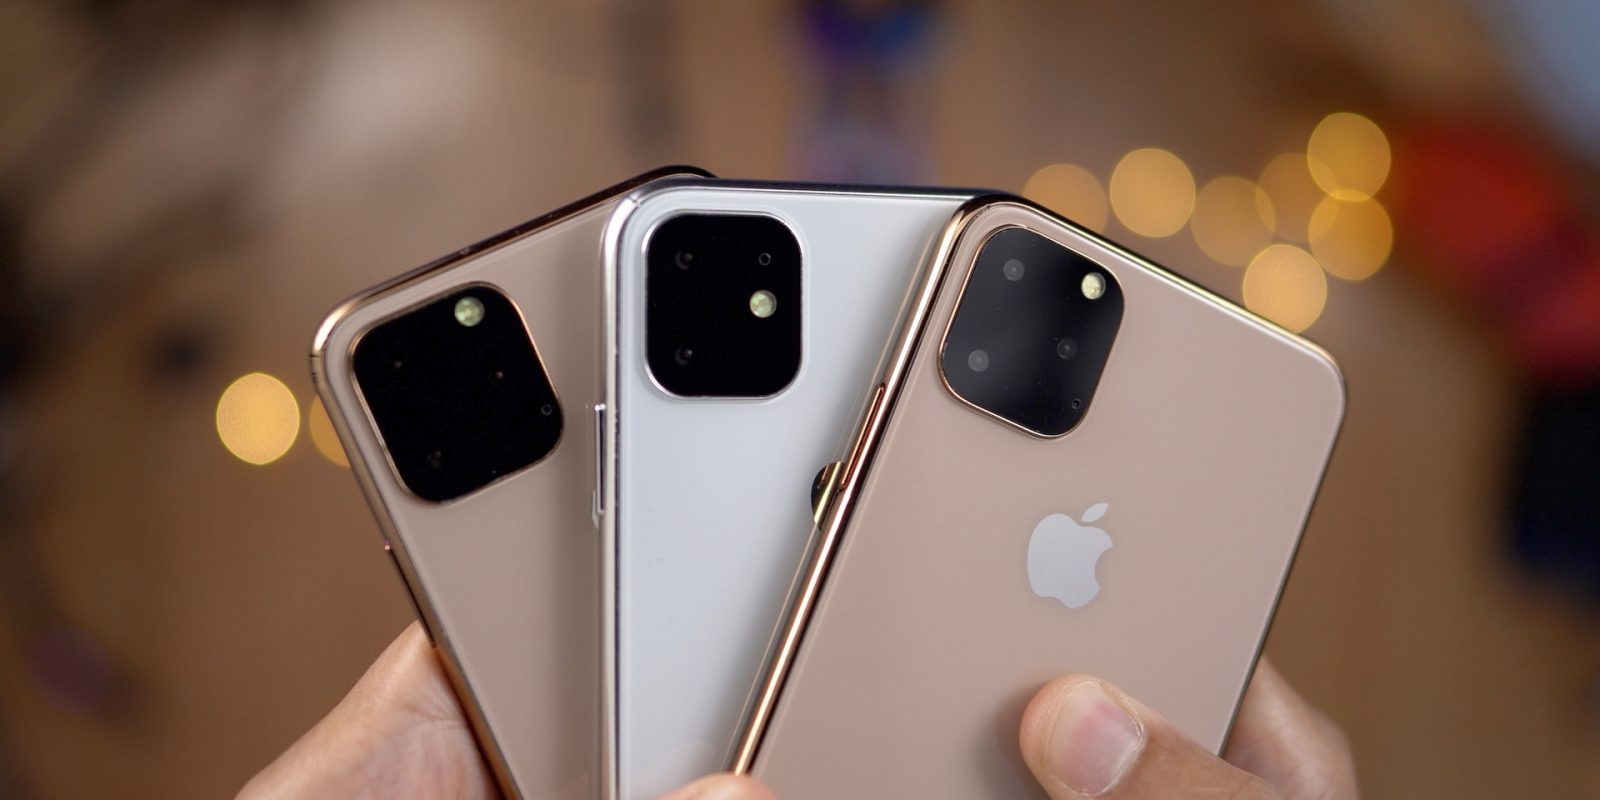 Apple iPhone 12 va faire fabriquer un SoC A14 sur un processus de fabrication 5 nm mais les coûts vont augmenter, selon un rapport de réclamations